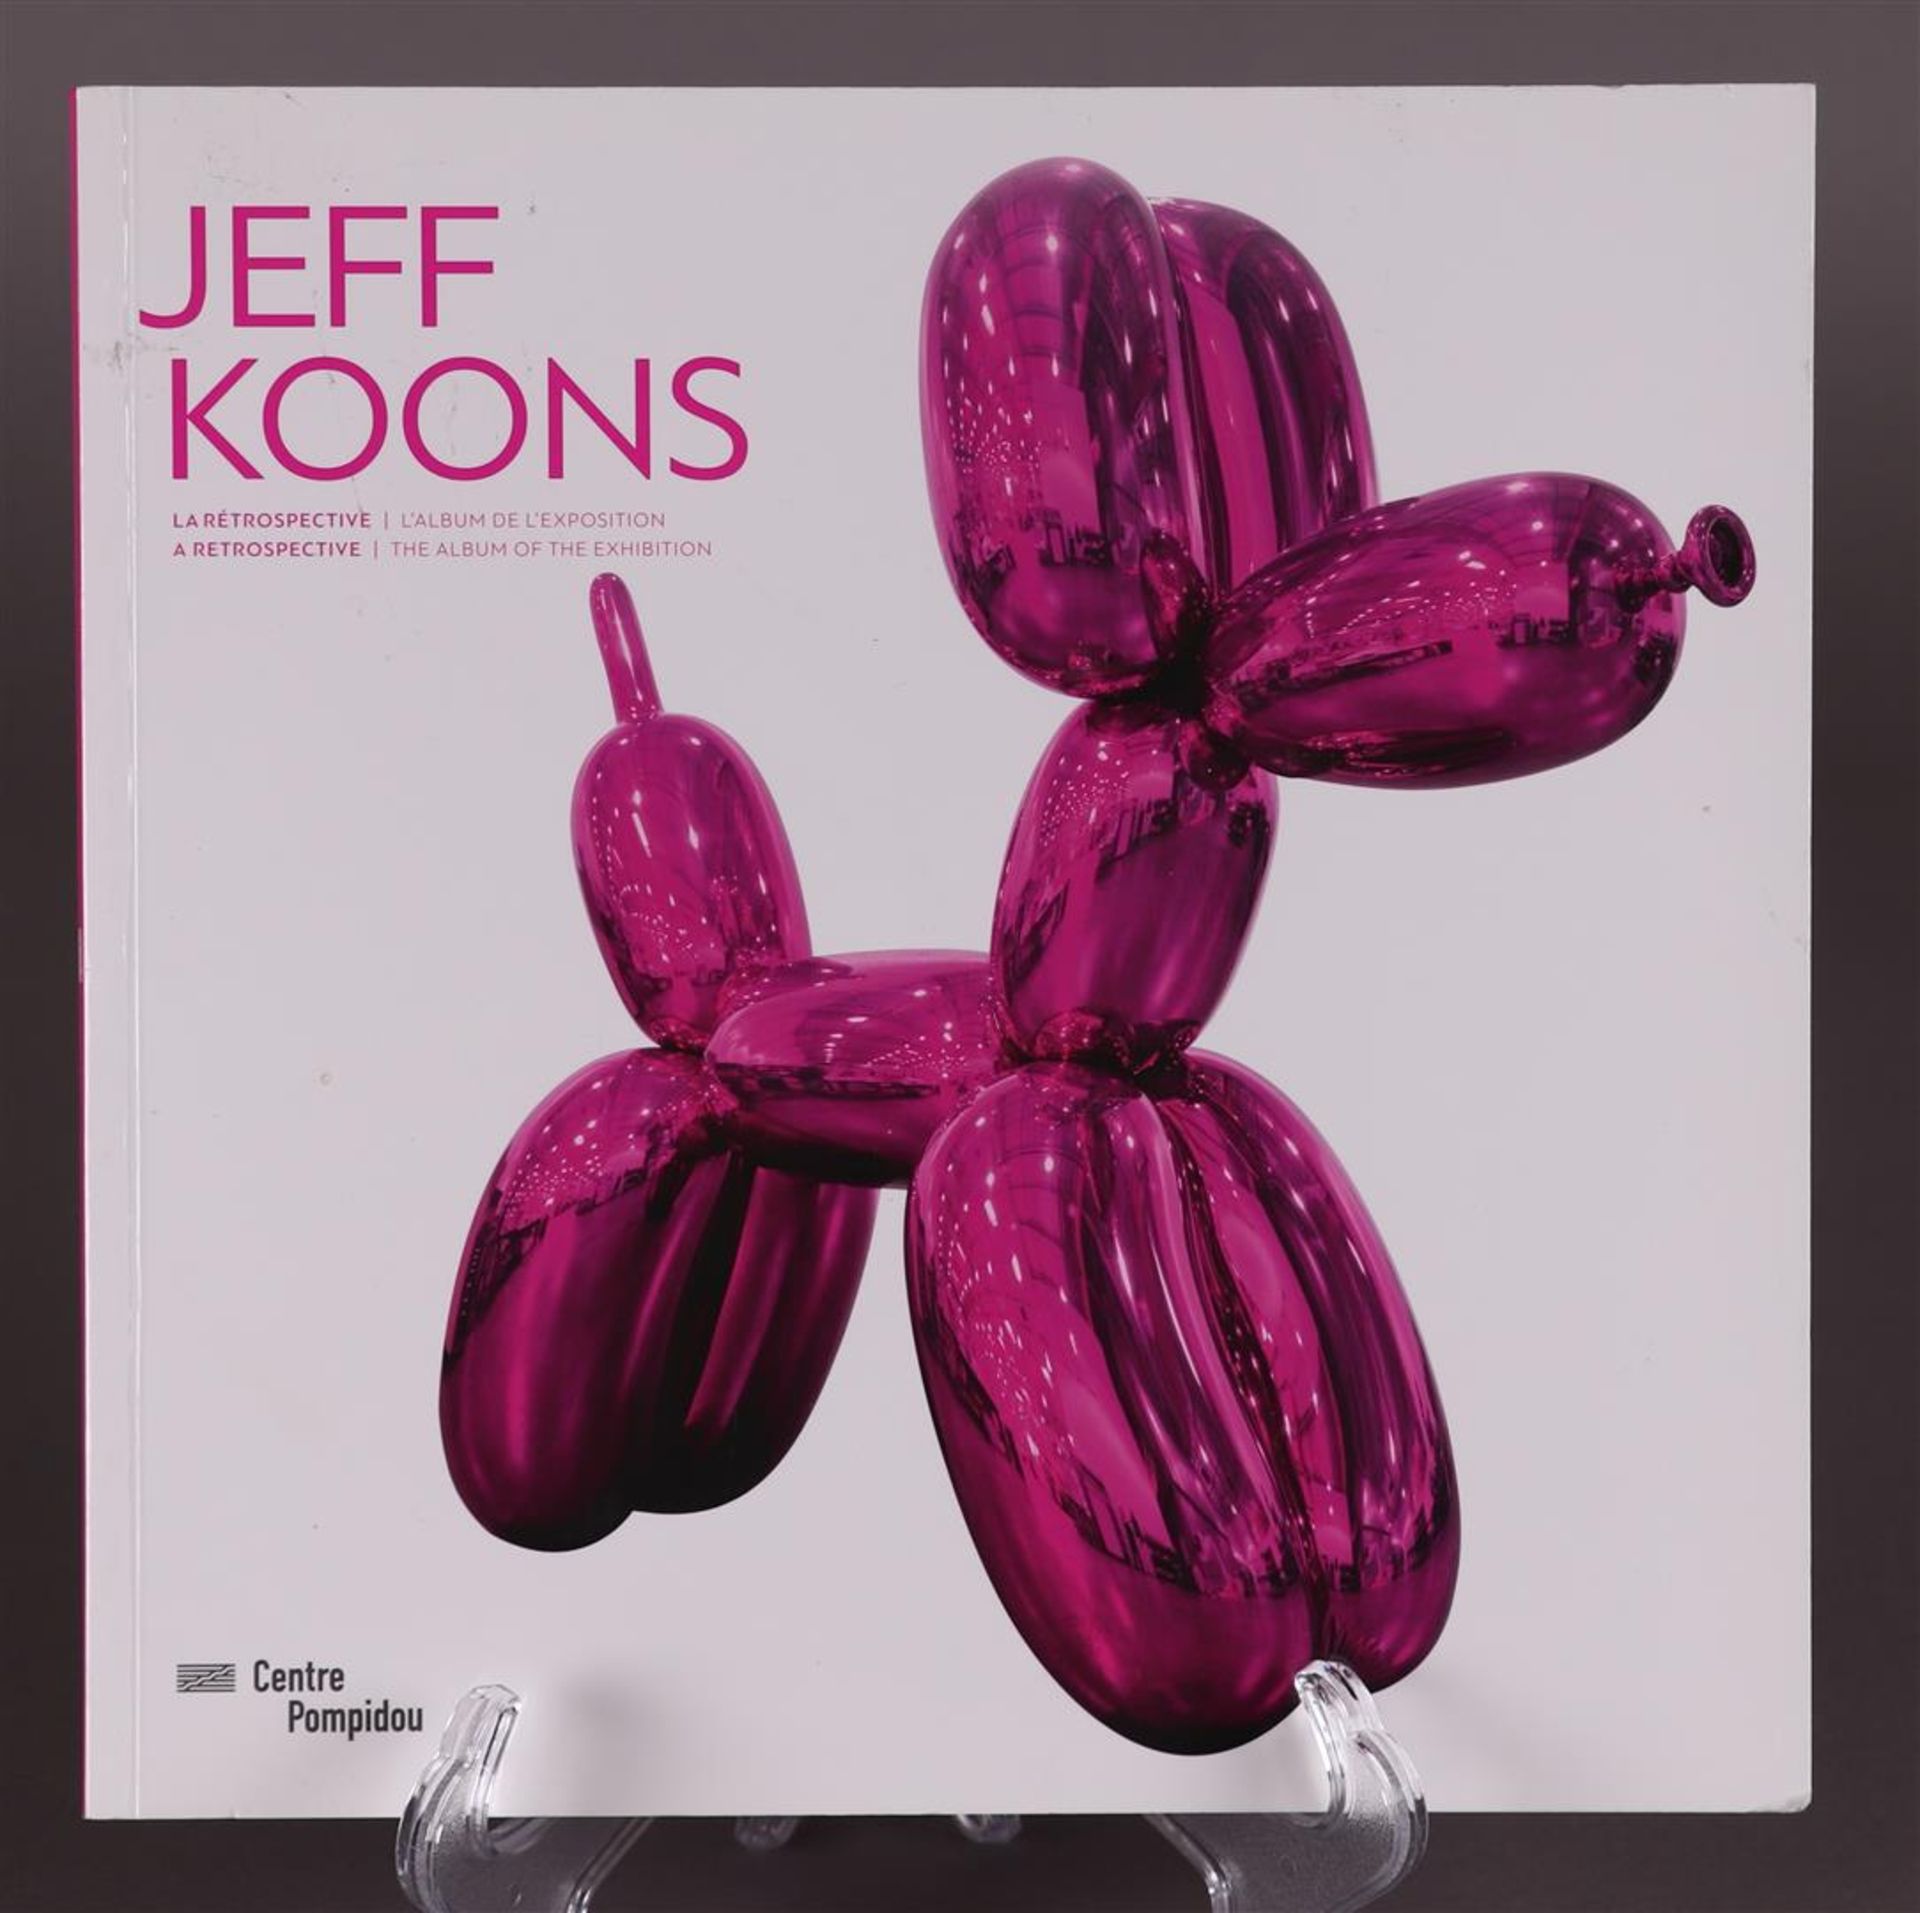 Jeff Koons, Retrospective / L'Album de"L'Exposition, Center Pompidou, with signature,